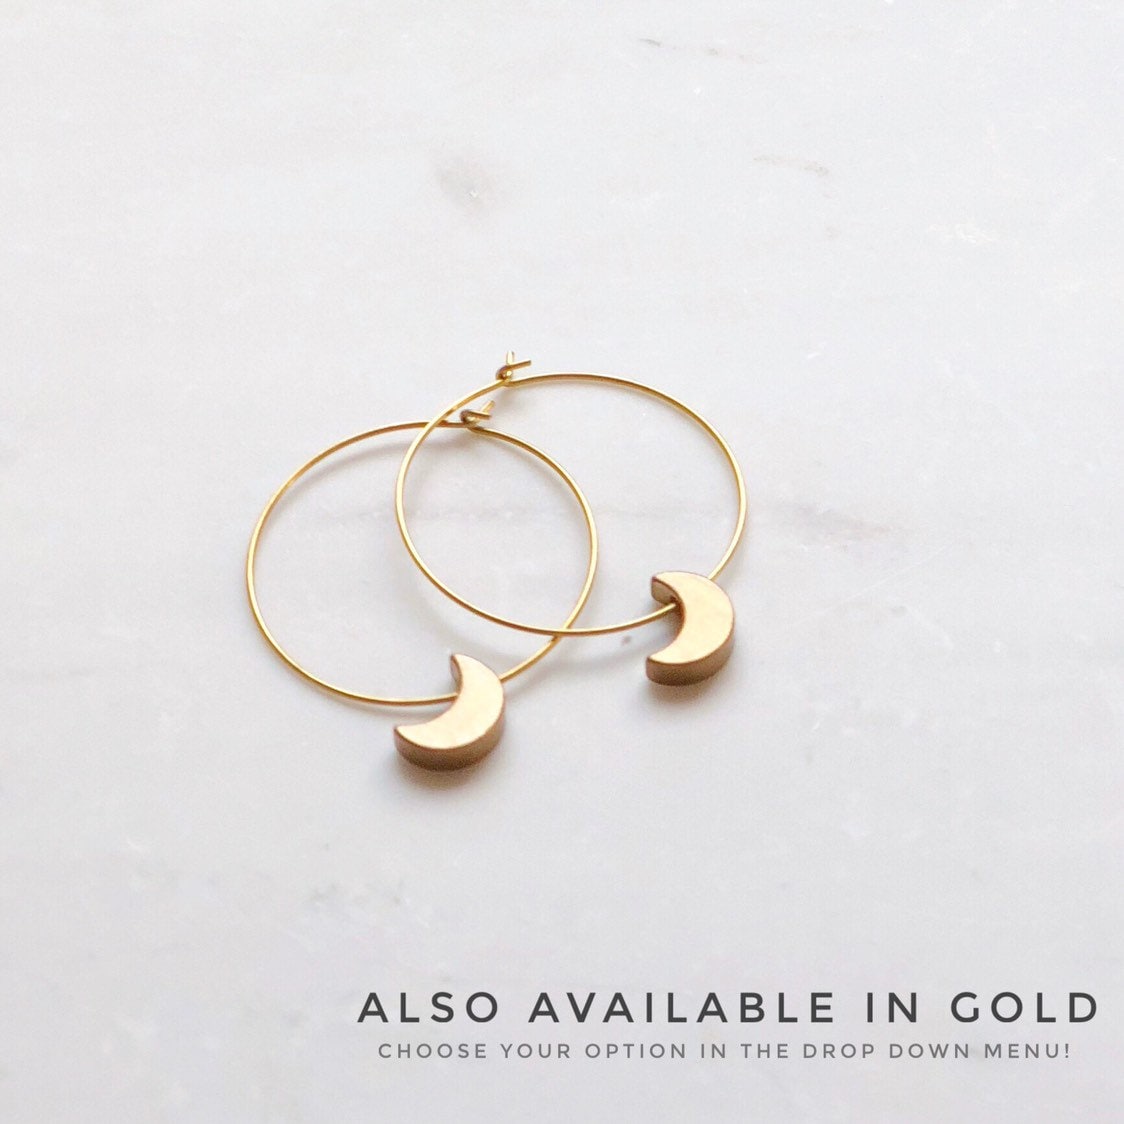 Silver Crescent Moon Hoop Earrings, Celestial jewelry, gold earrings, moon jewelry